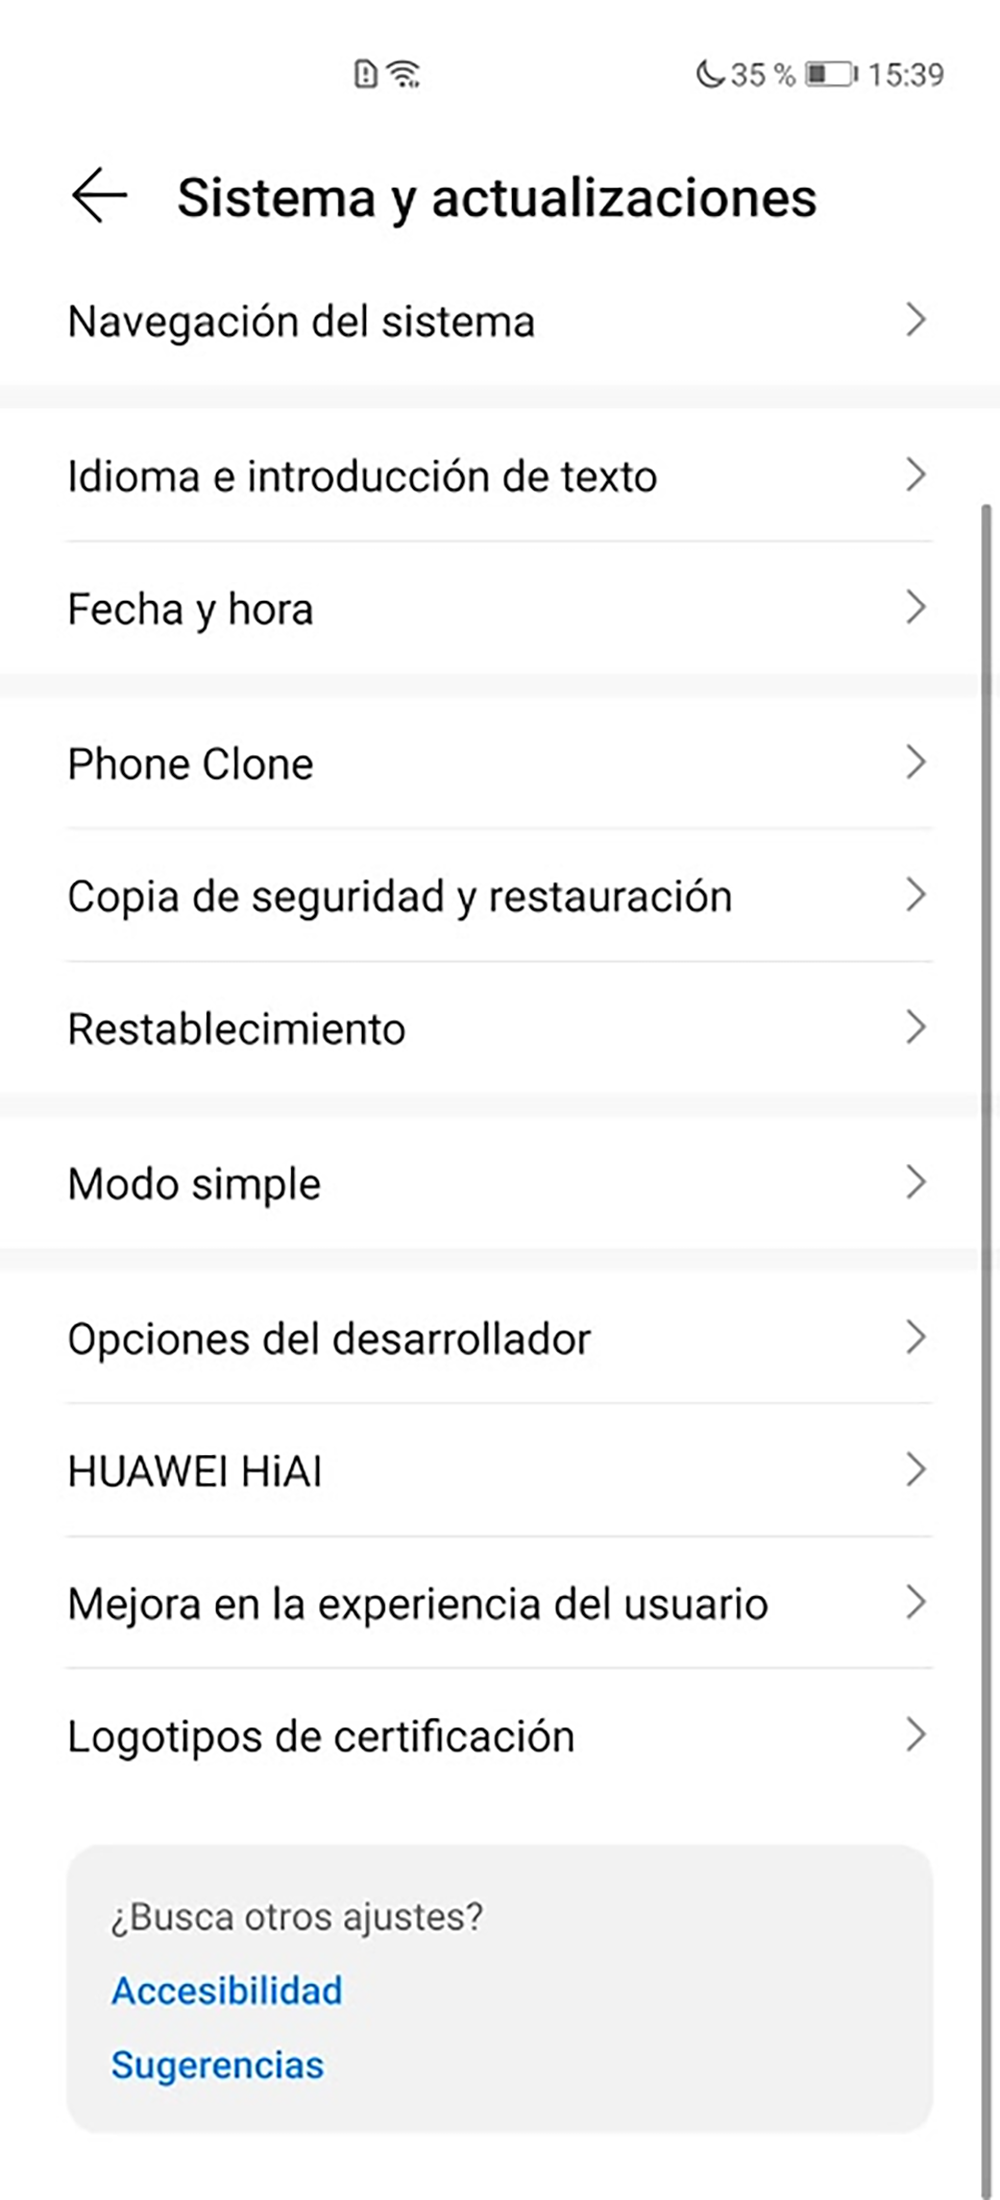 Desintalar app Huawei en EMUI